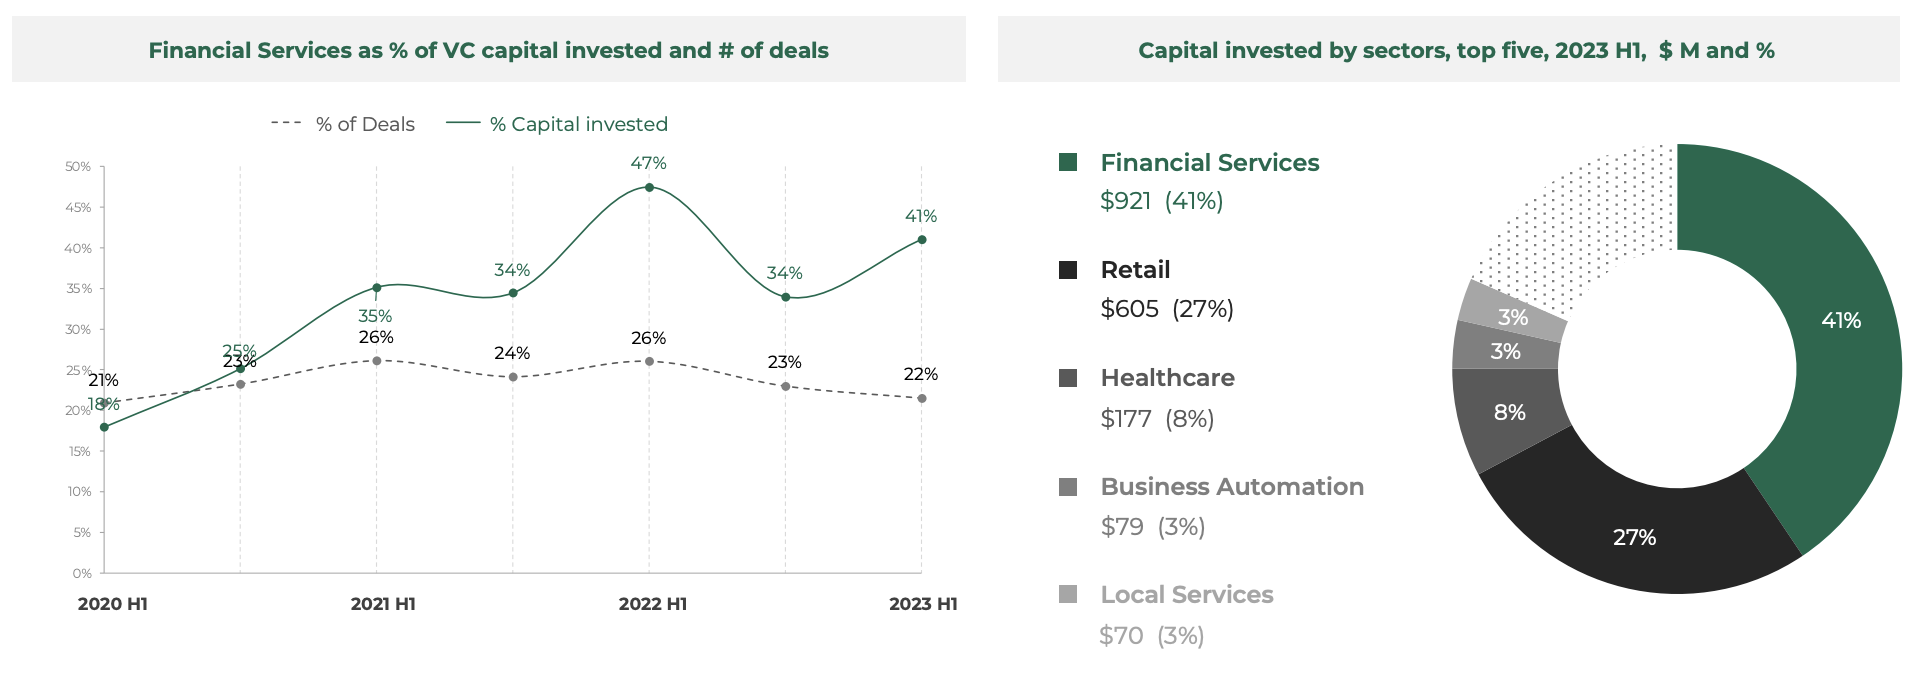 Μερίδιο χρηματοοικονομικών υπηρεσιών ως % του επενδυμένου κεφαλαίου VC και # των συμφωνιών, Πηγή: Southeast Asia Tech Investment 2023 H1, Cento Ventures, Δεκ 2023